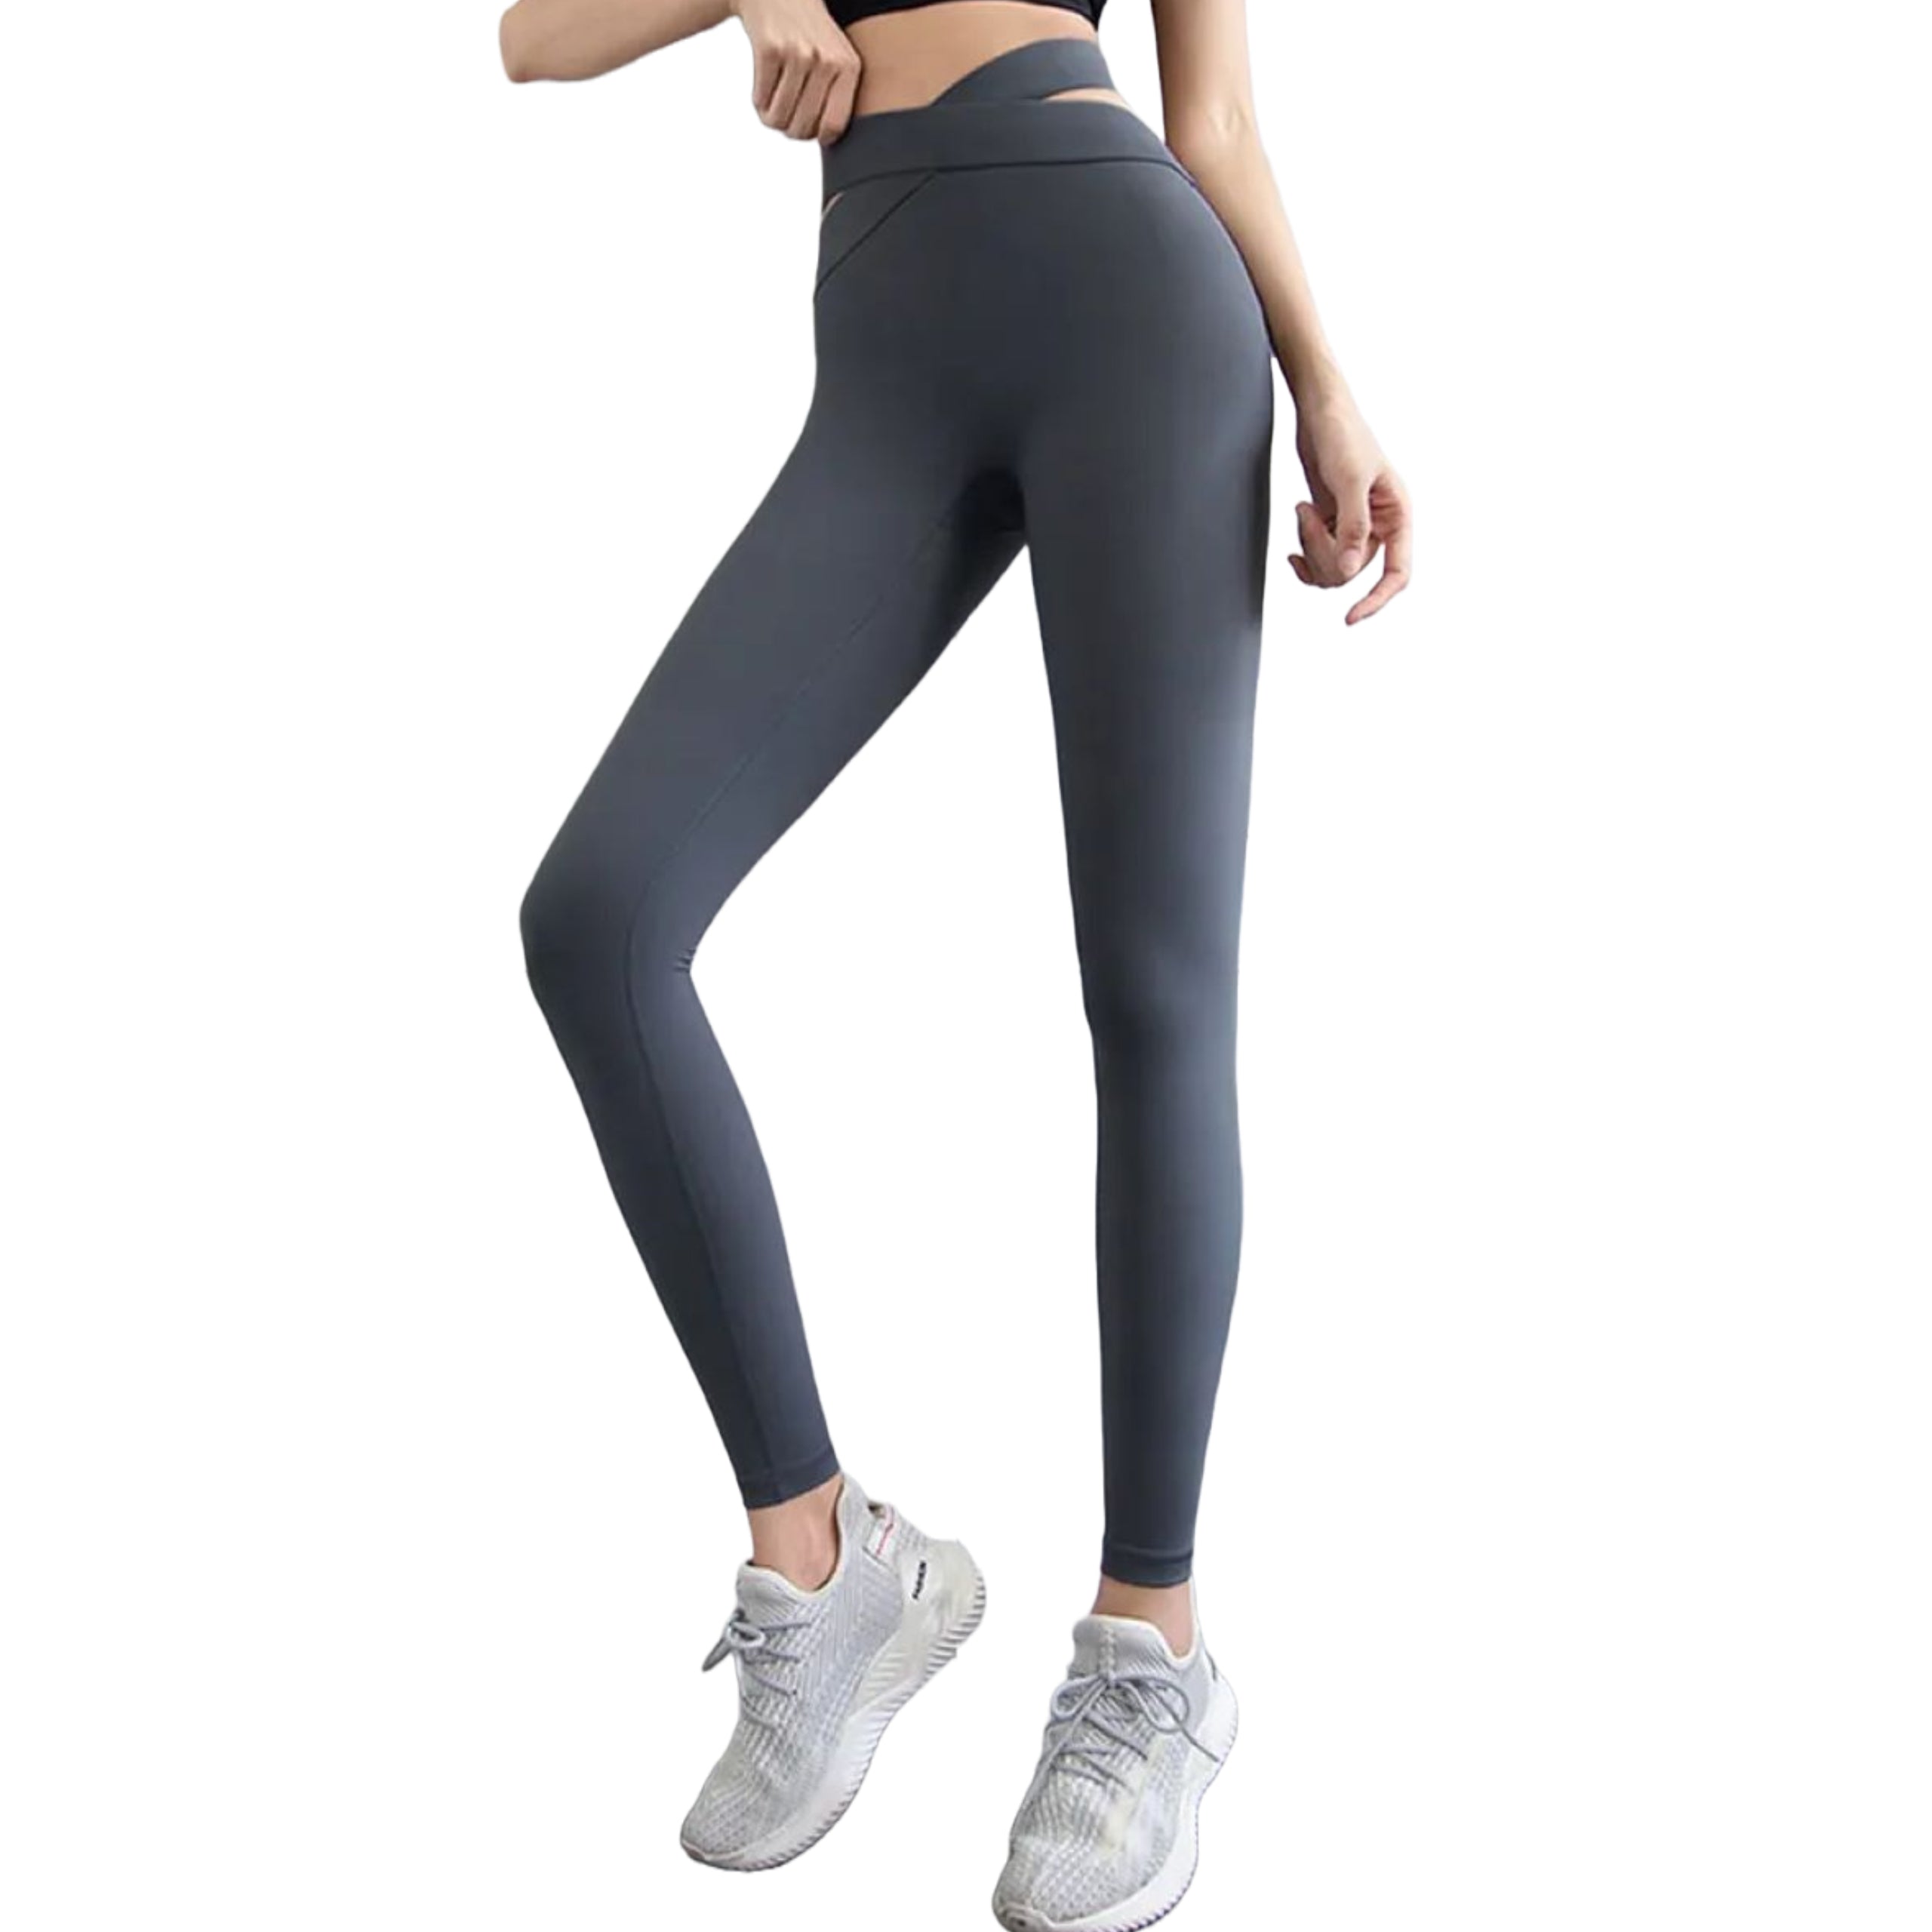 Buy Kica Second Skn Criss Cross Waistband Leggings For Yoga Grey